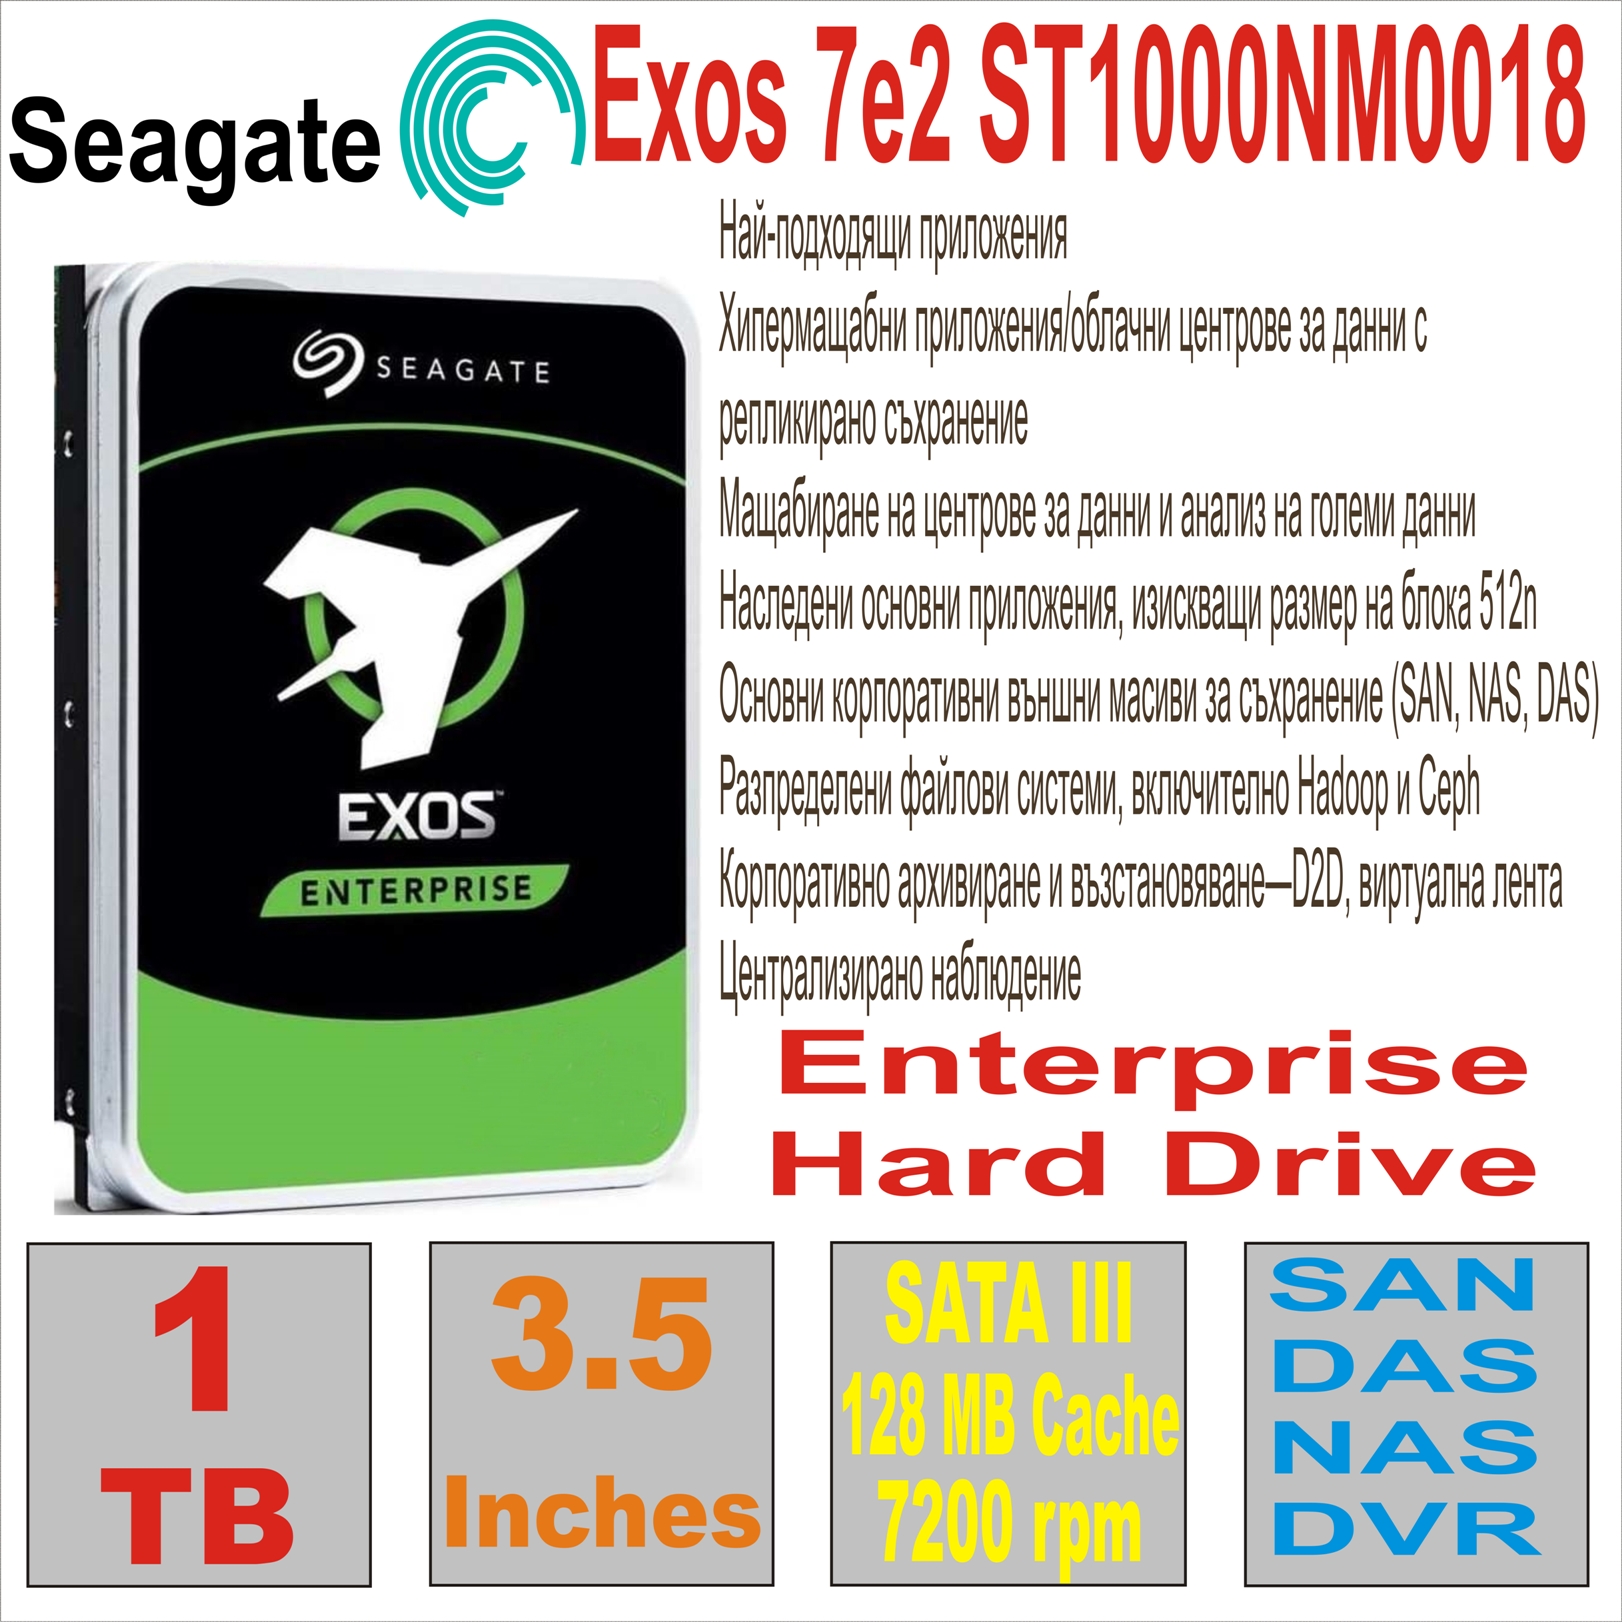 HDD 3.5` 1 TB SEAGATE Exos 7e2 ST1000NM0018